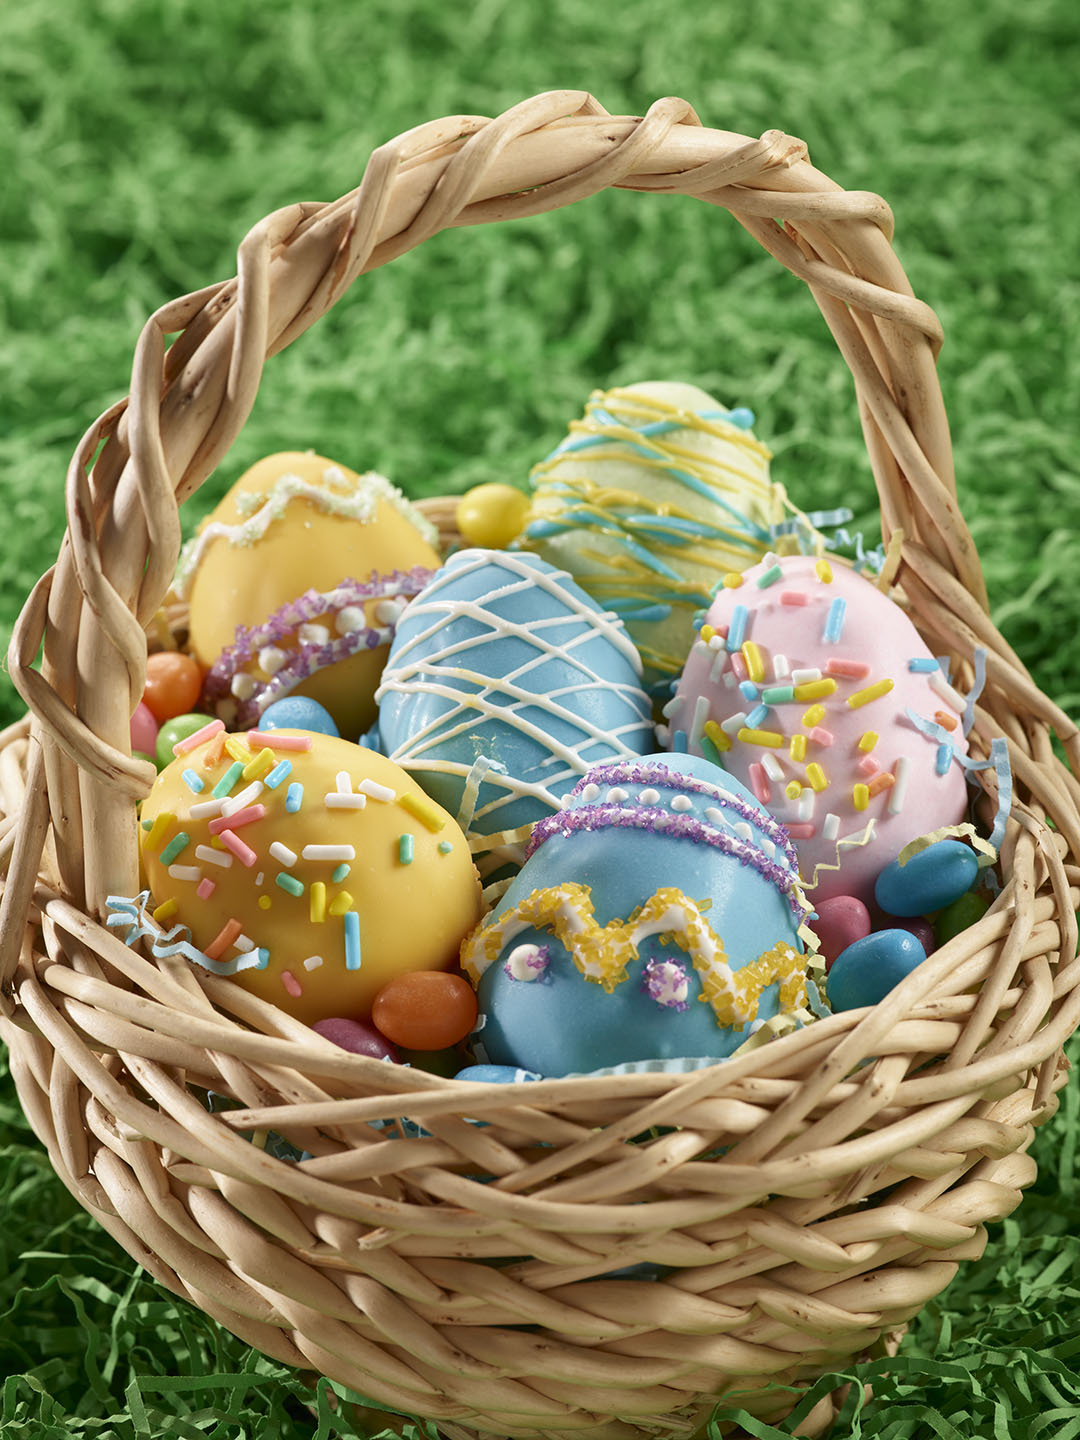 Easter egg cake balls recipe from Pillsbury